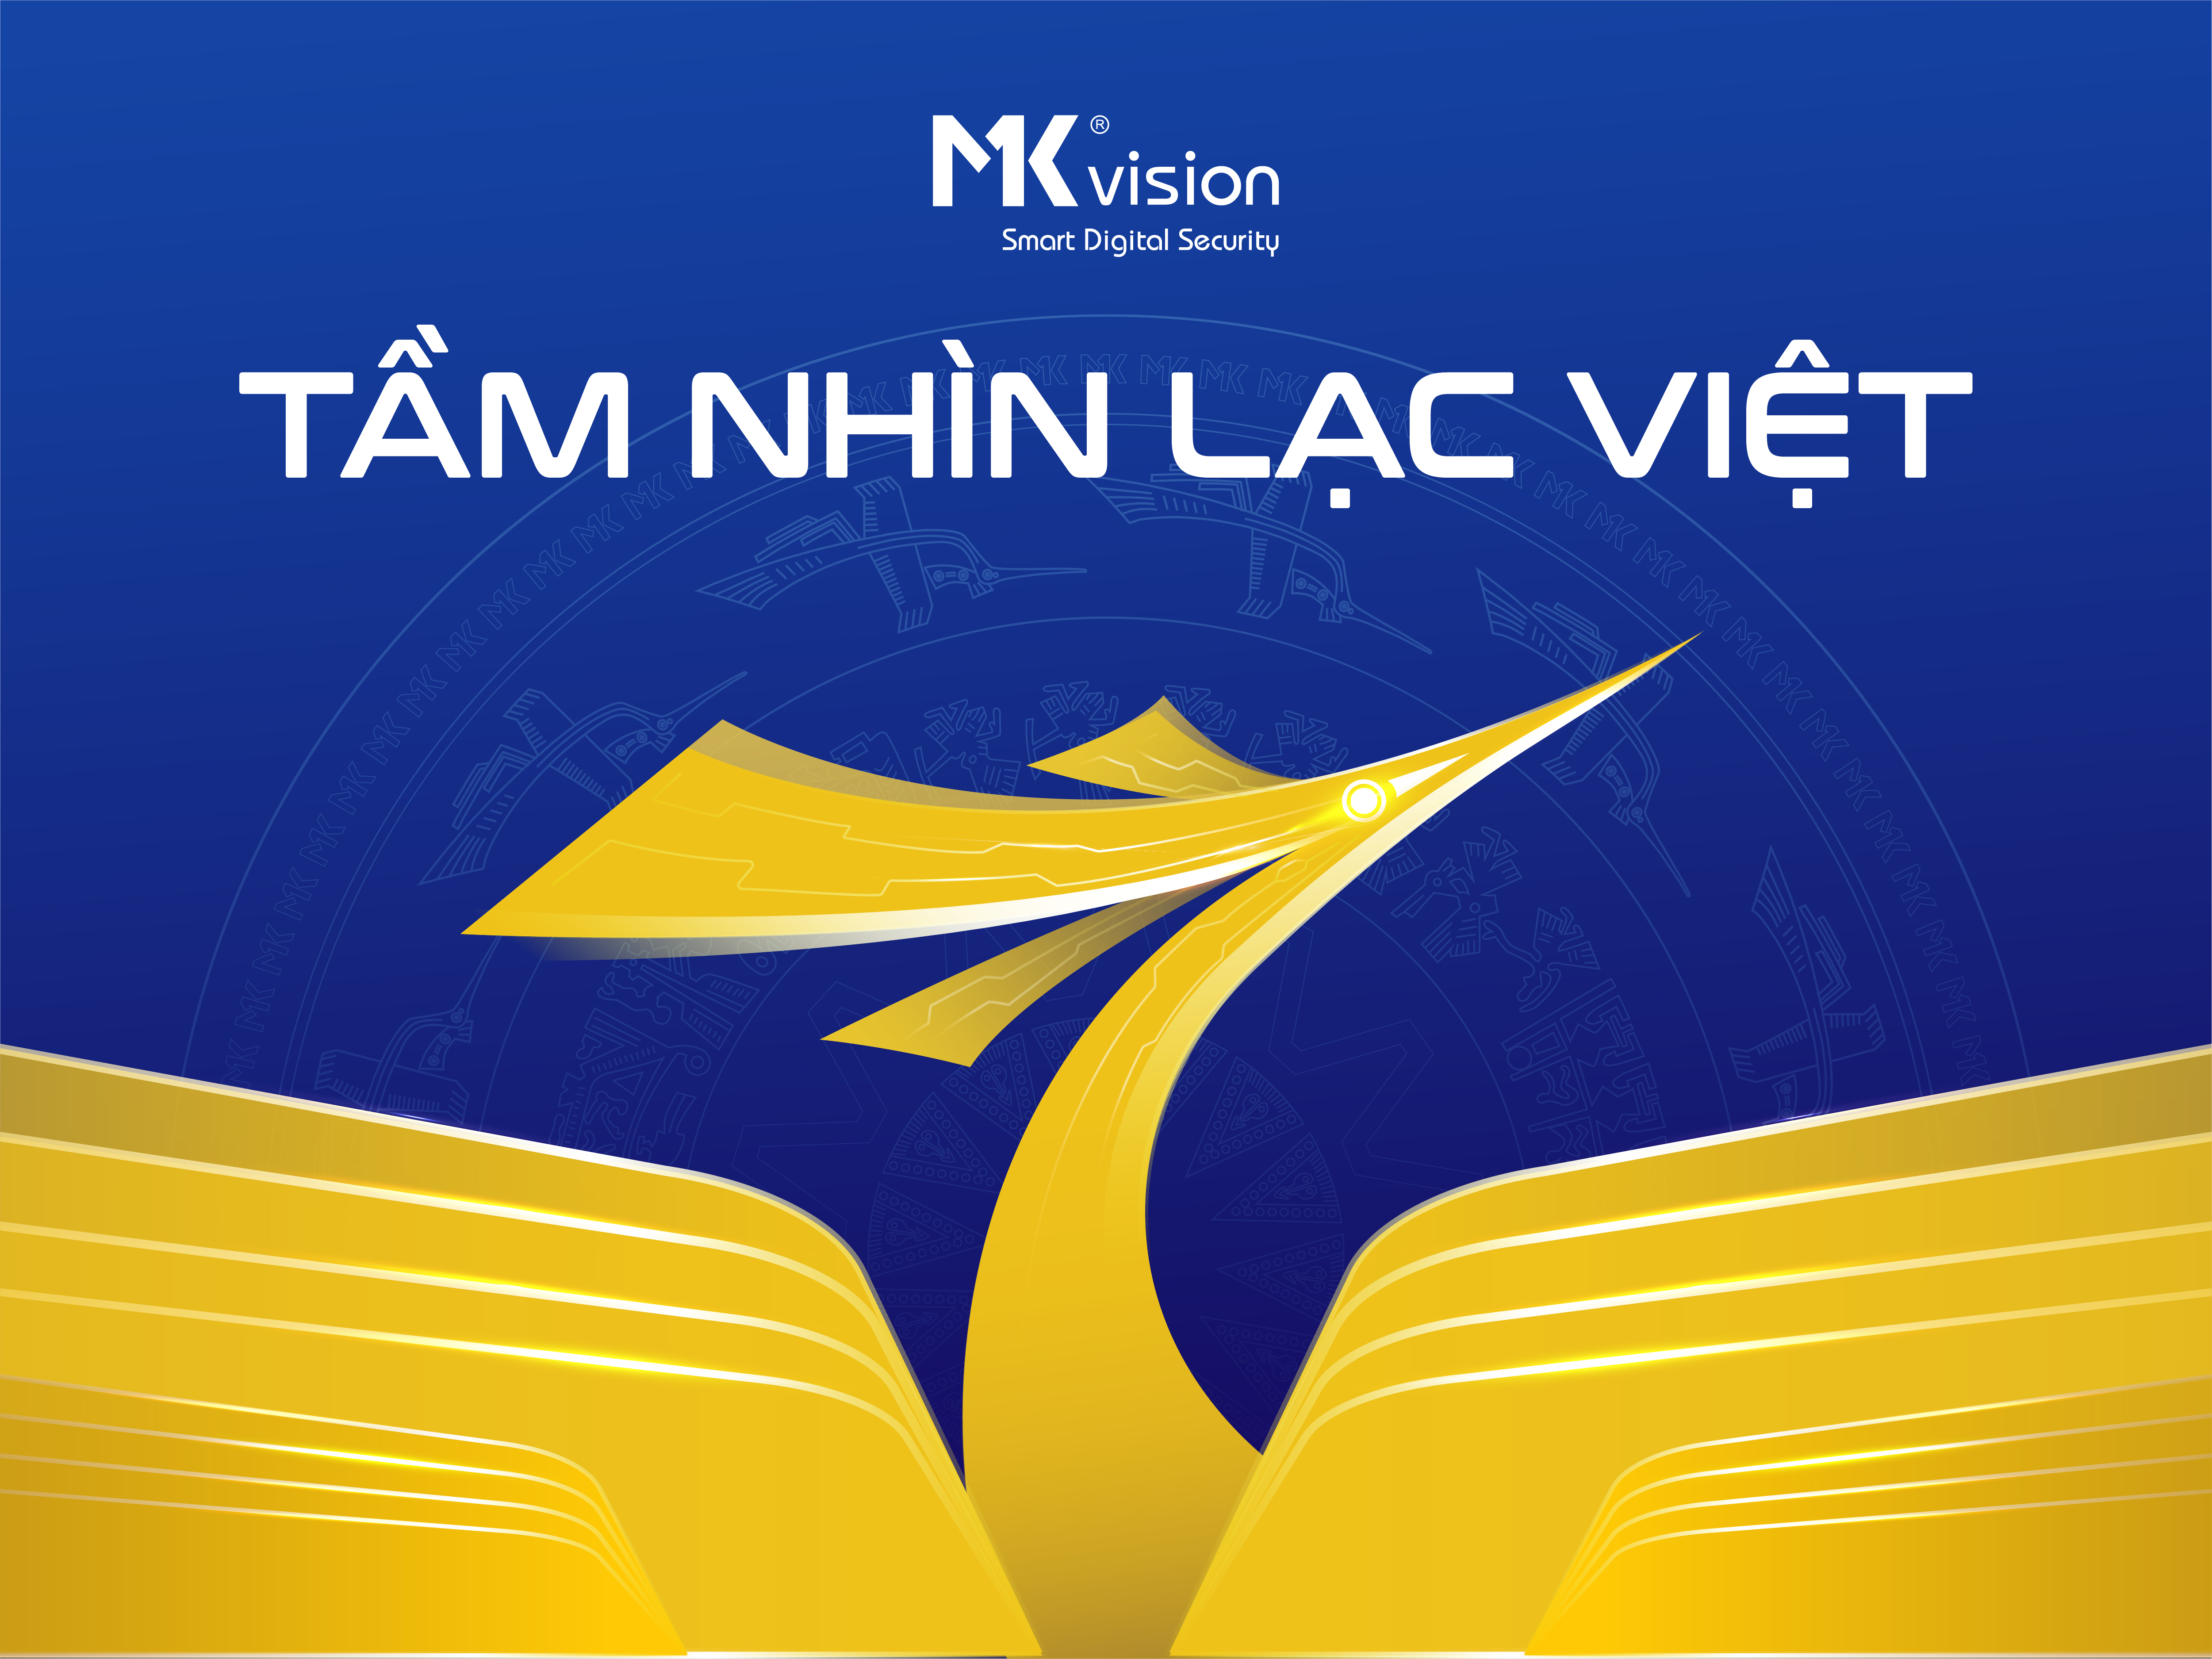 MK Vision khánh thành nhà máy công nghệ cao với khát vọng “Tầm nhìn Lạc Việt” 